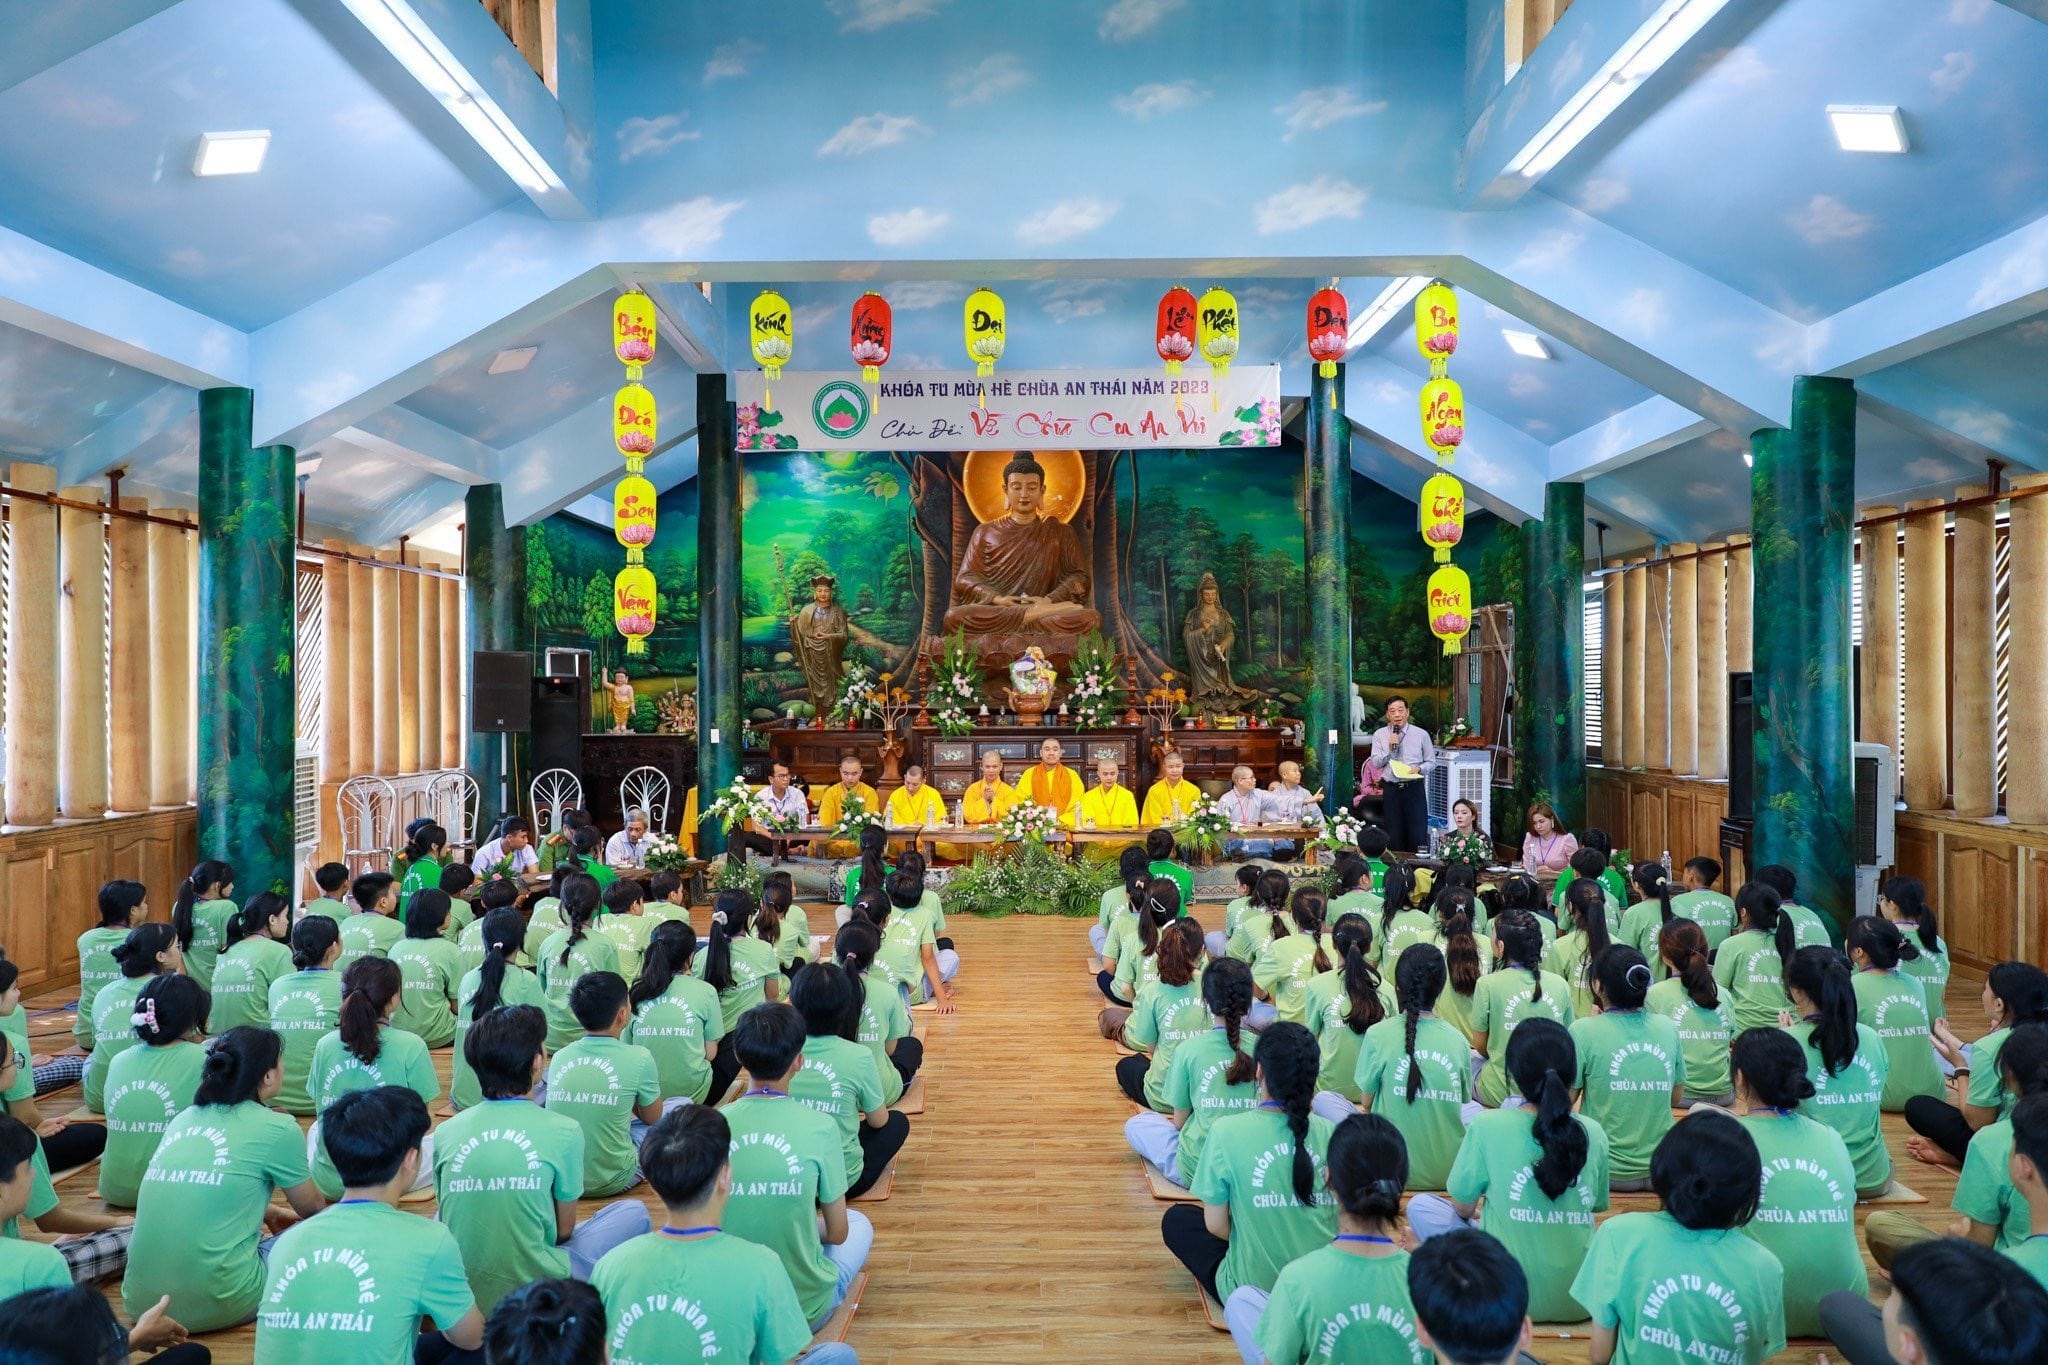 Hoài Nhơn: Khai mạc khóa tu mùa hè lần thứ 2 năm 2023 Về Chùa Con An Vui tại chùa An Thái